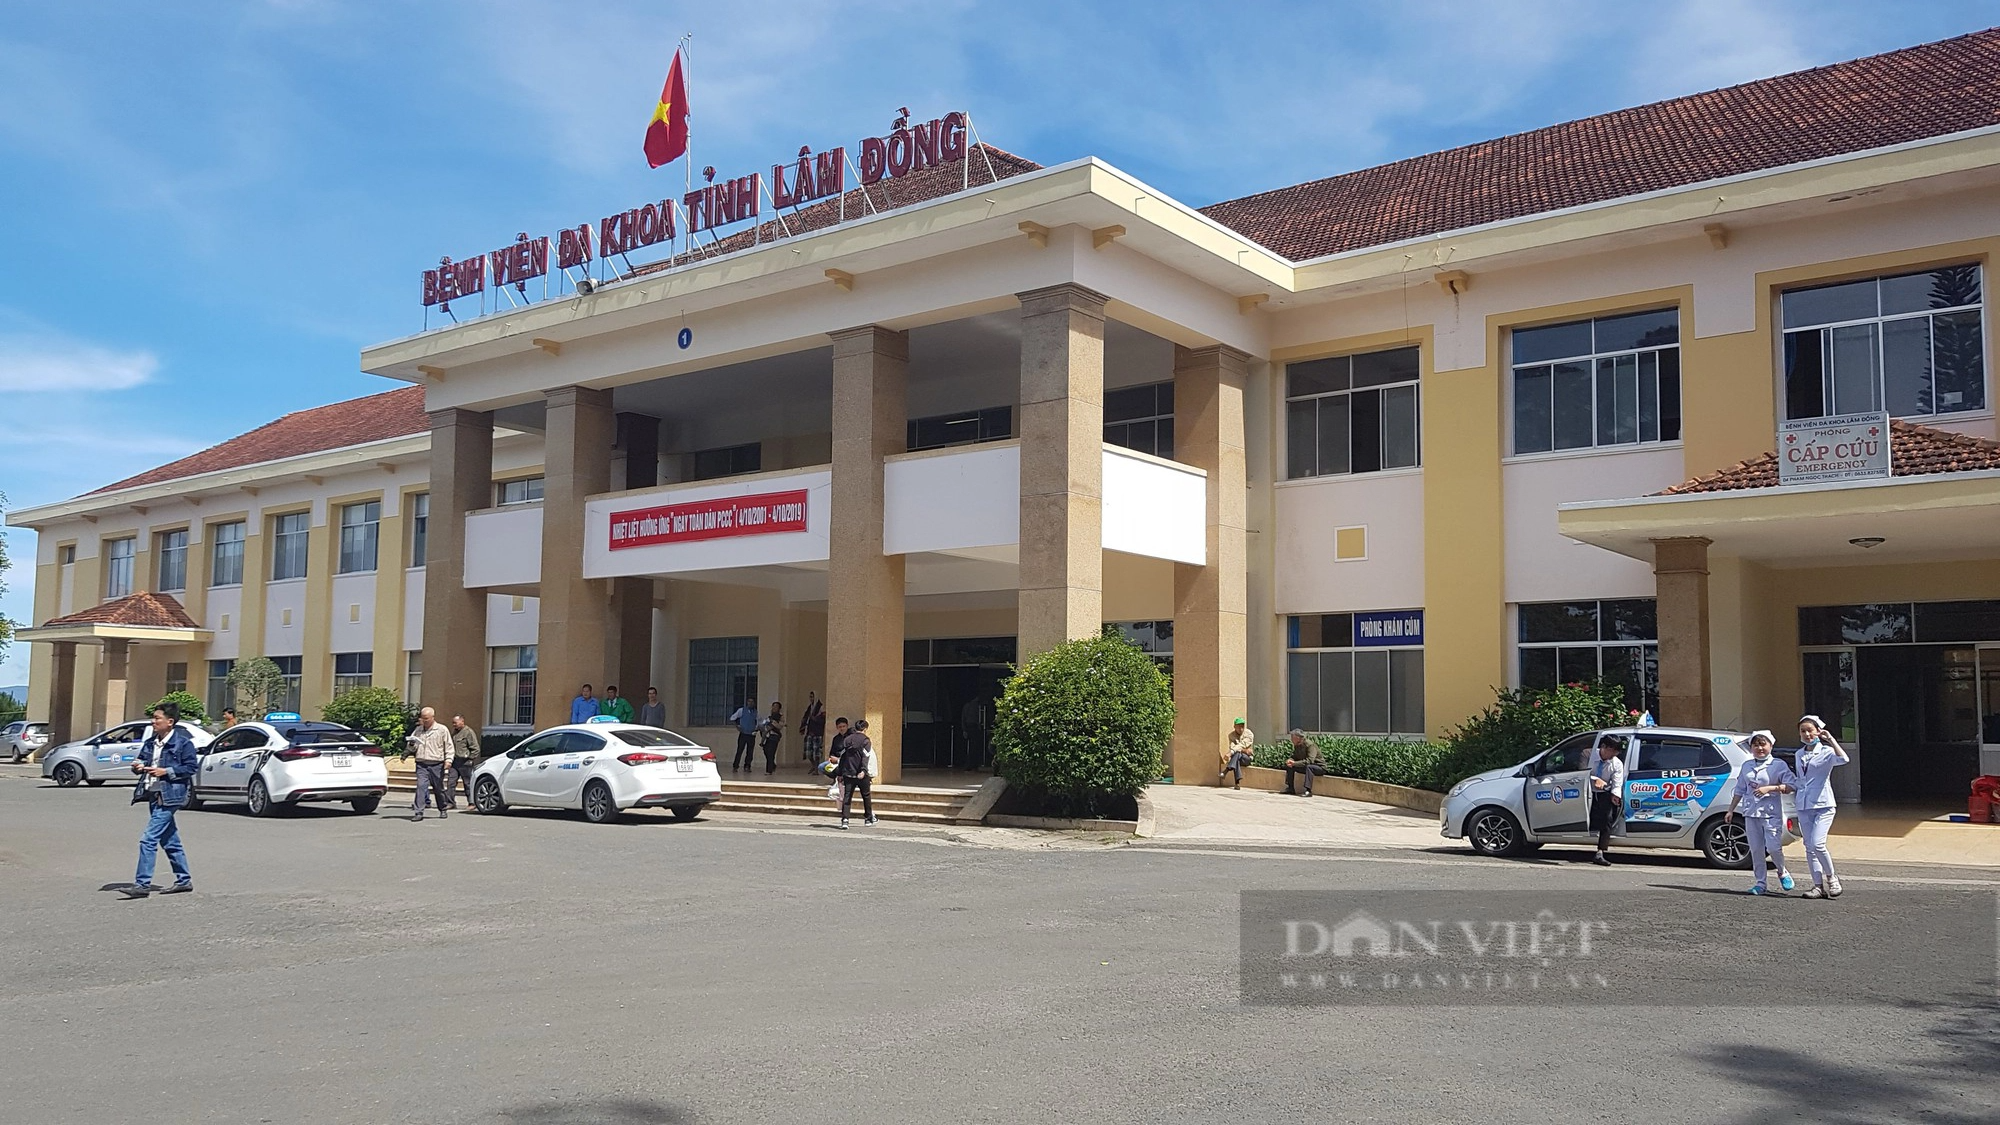 Một bác sĩ nghi trục lợi bảo hiểm y tế ở Lâm Đồng với số tiền gần 900 triệu đồng - Ảnh 2.